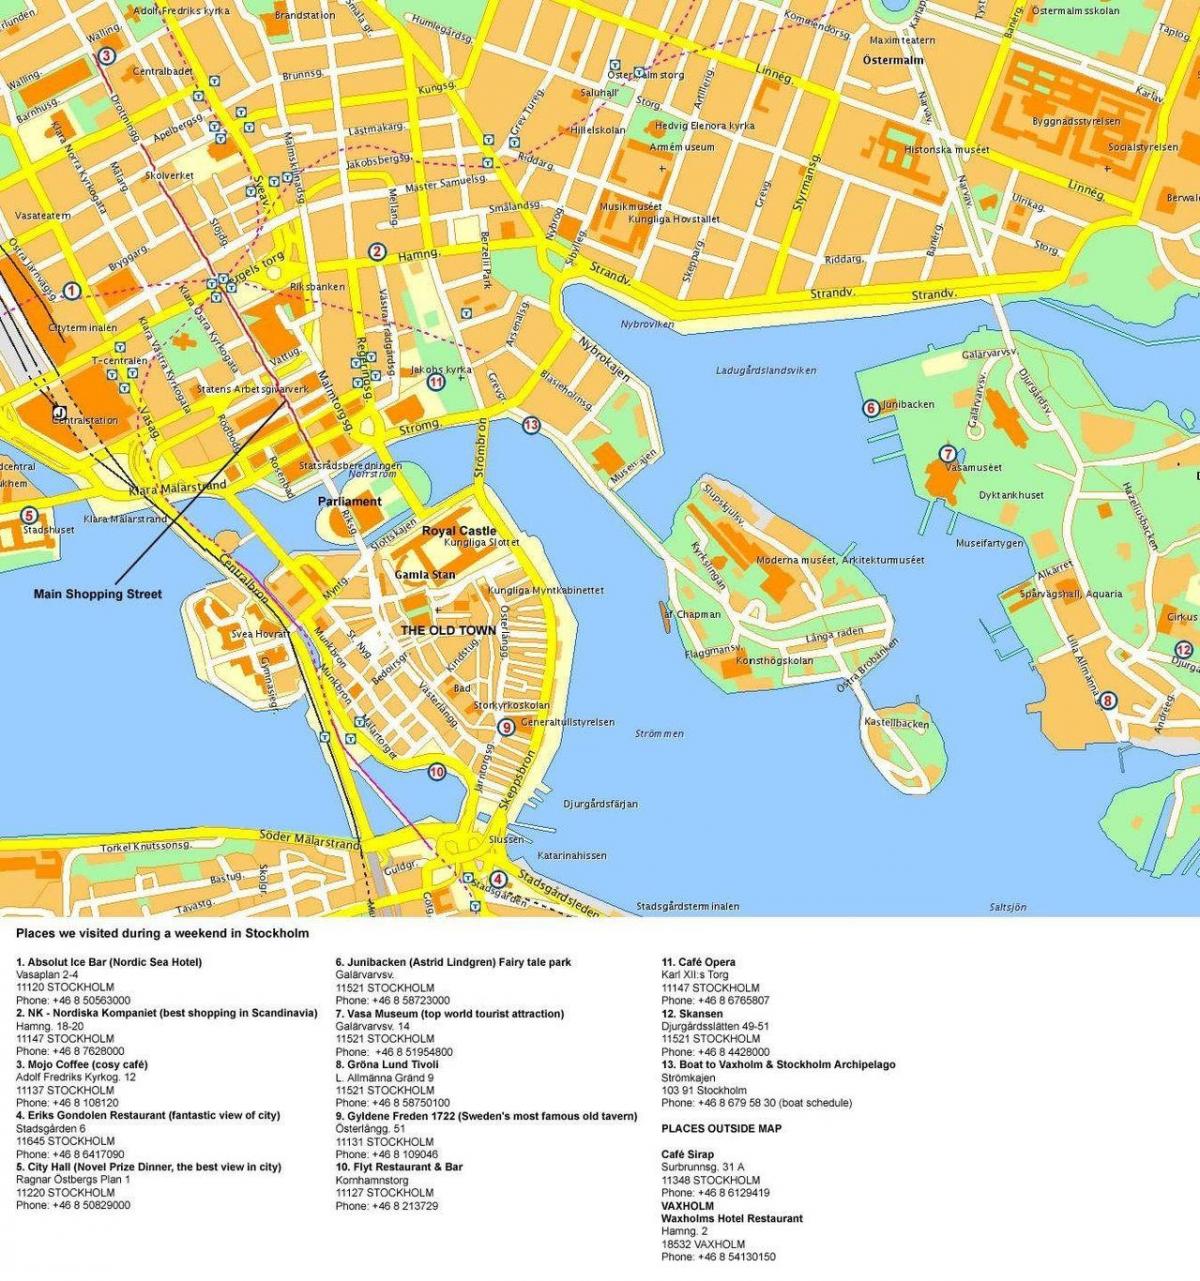 mappa di Stoccolma terminal crociere